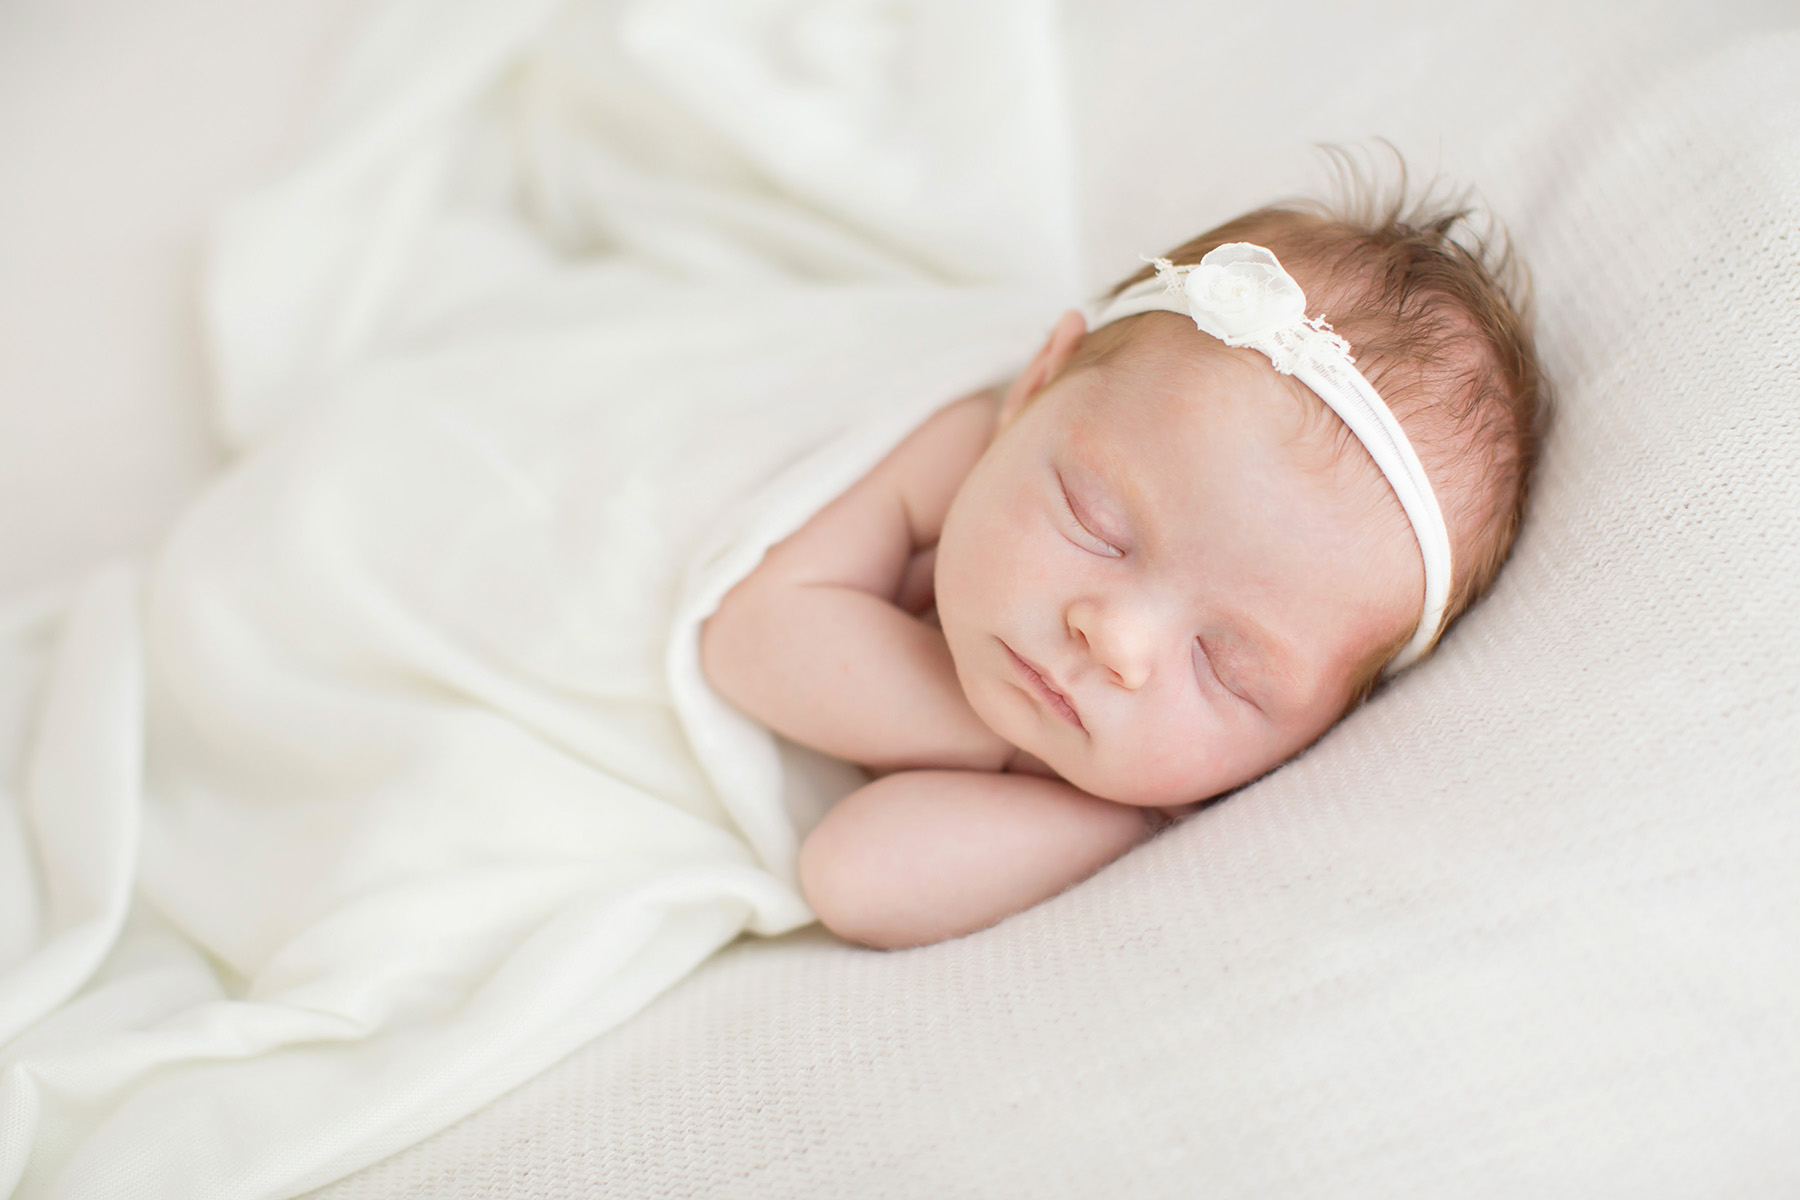 Louisville KY newborn photographer | Julie Brock Photography | maternity | family | louisville photography studio | natural newborn baby photography